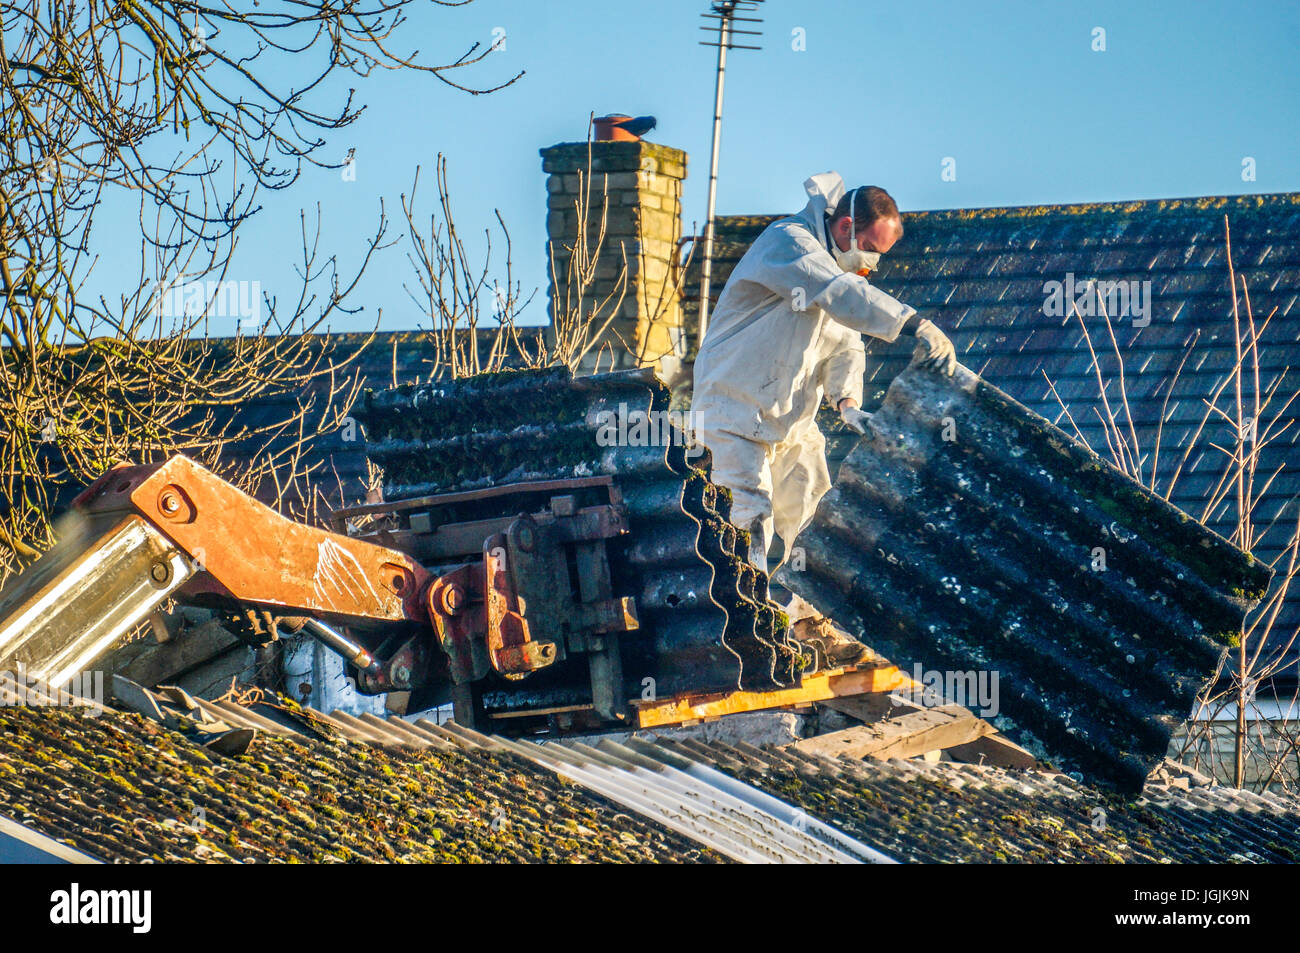 Ein Mann durch das Tragen von schützender Kleidung während der Entfernung von Asbest Dacheindeckung aus einer alten Scheune. Lincolnshire, England, UK. Stockfoto